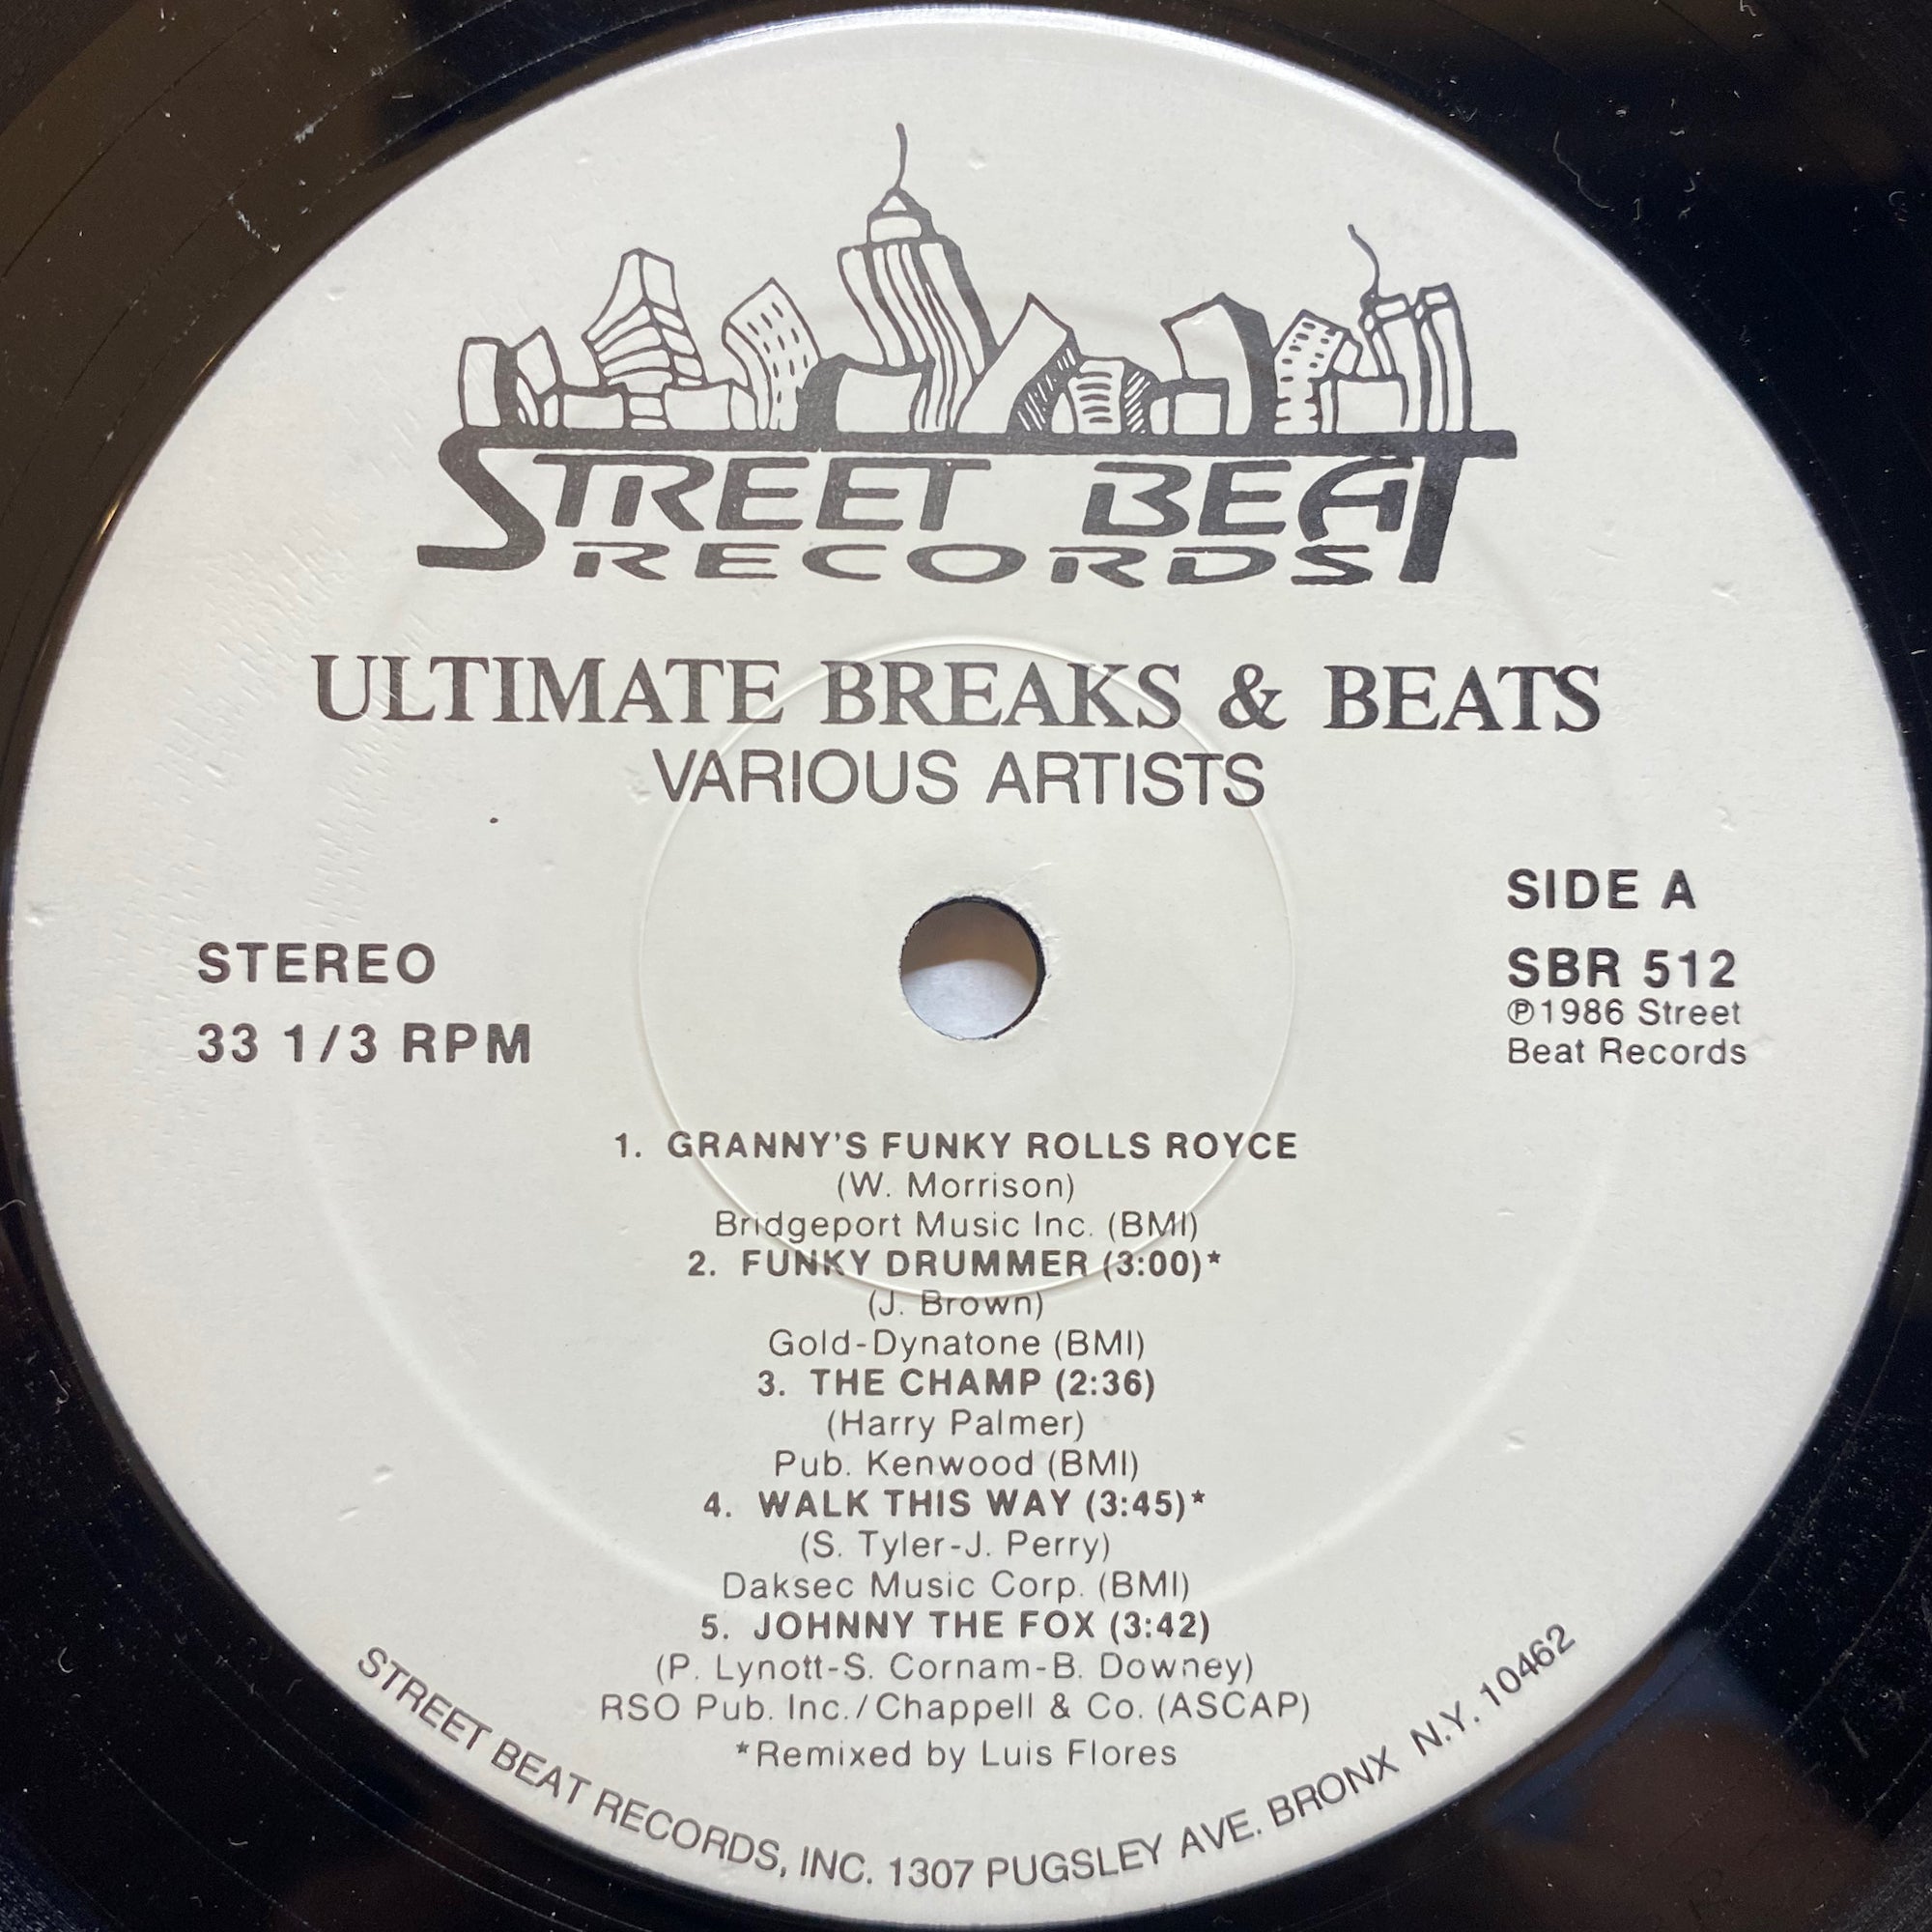 Ultimate Breaks & Beats (SBR 512)